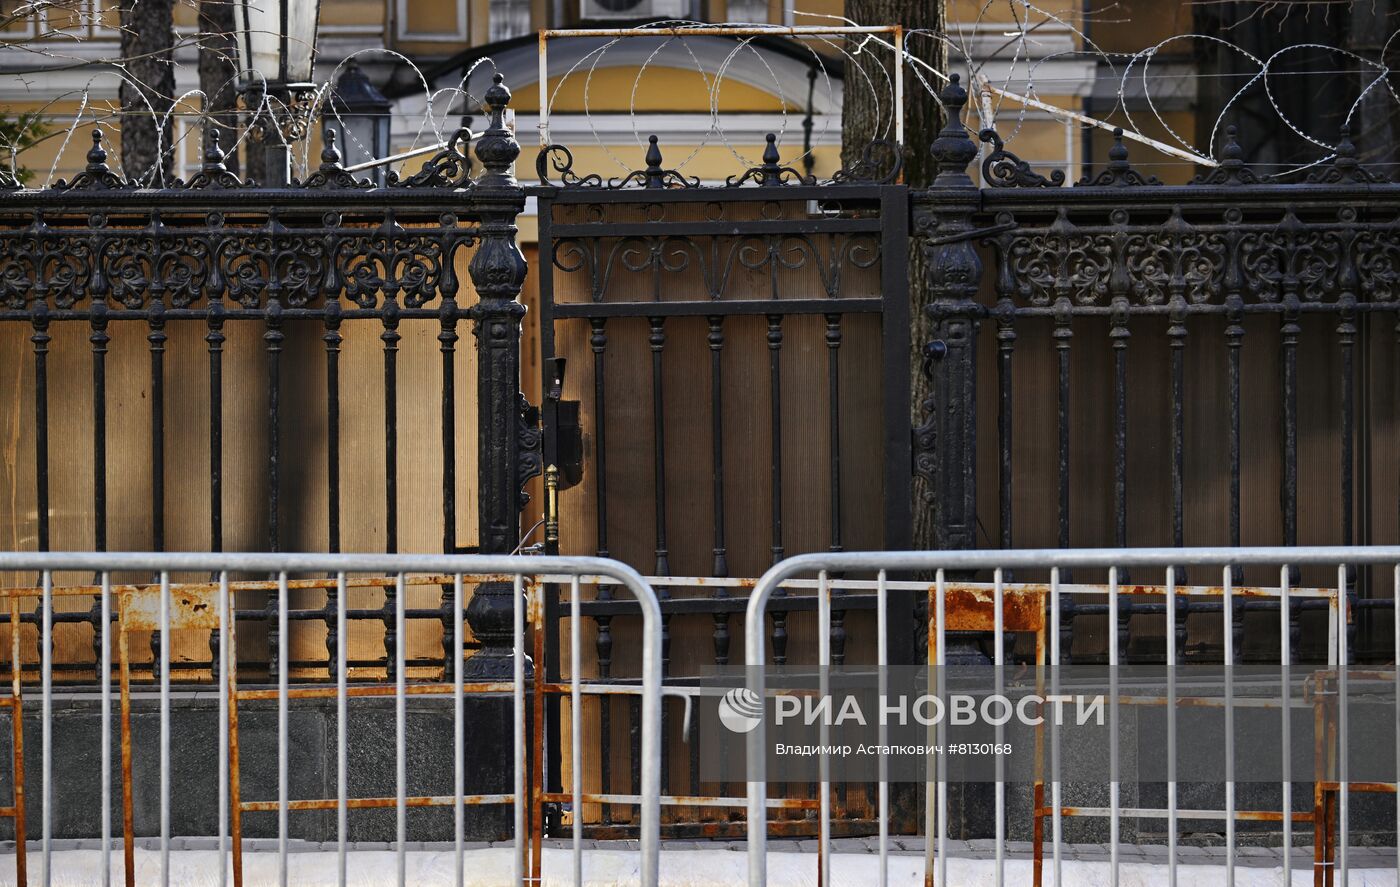 Со здания посольства Украины в Москве сняли флаг